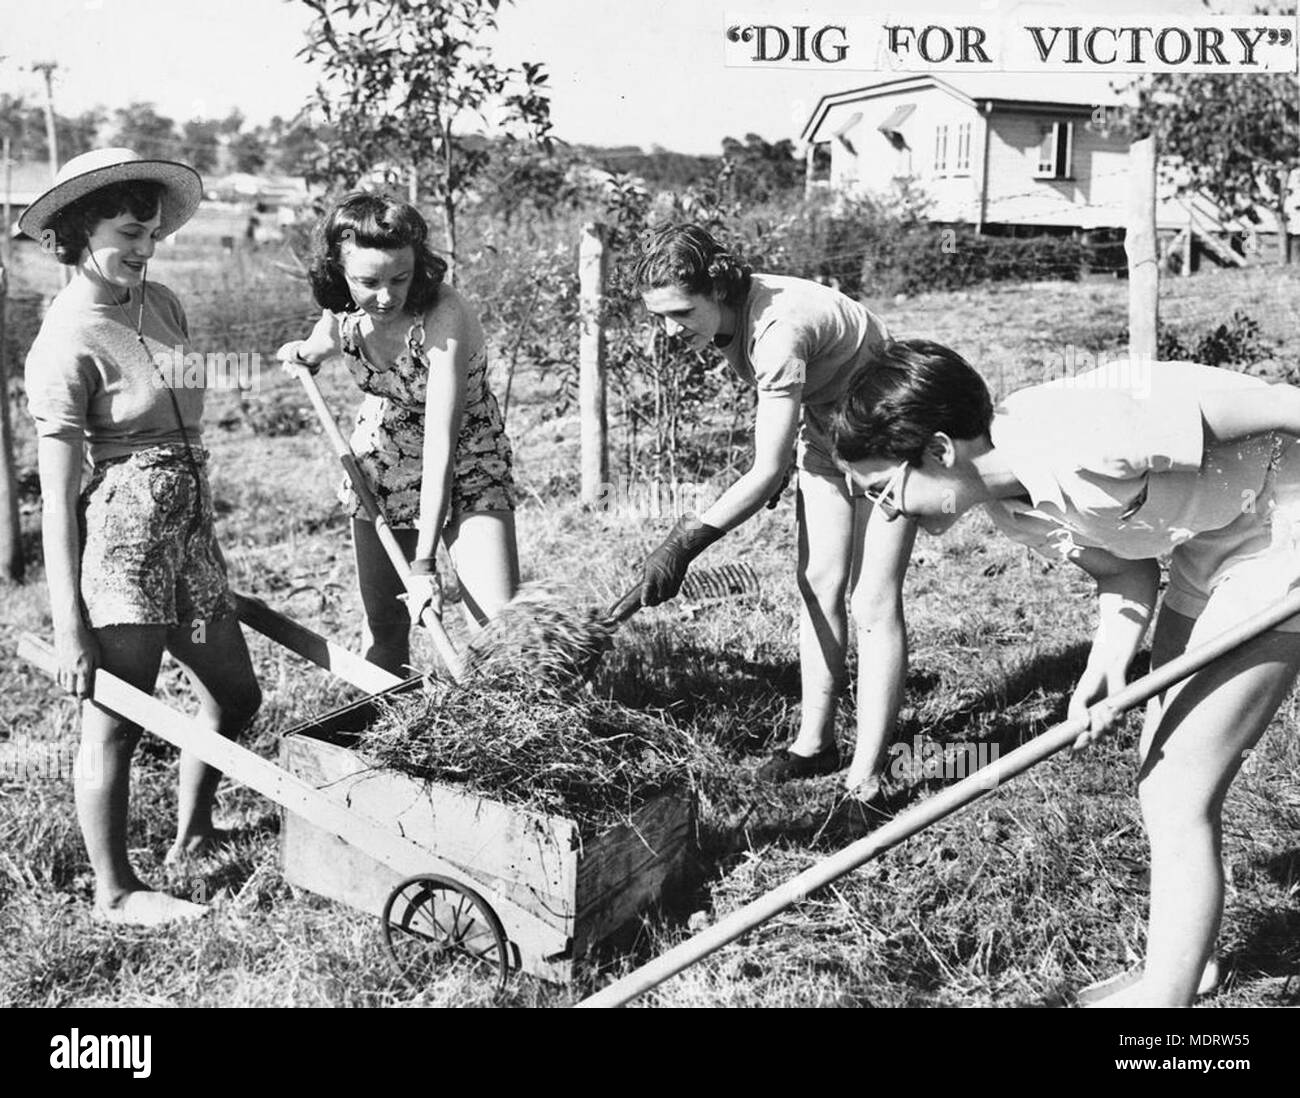 Lo scavo per la vittoria, 1941. Posizione: Brisbane, Queensland, Australia. Descrizione: Yvonne Lawson, Carol Loseby, Betty Wetkin e Ruth Collum, fare la loro parte per lo sforzo di guerra. Foto Stock